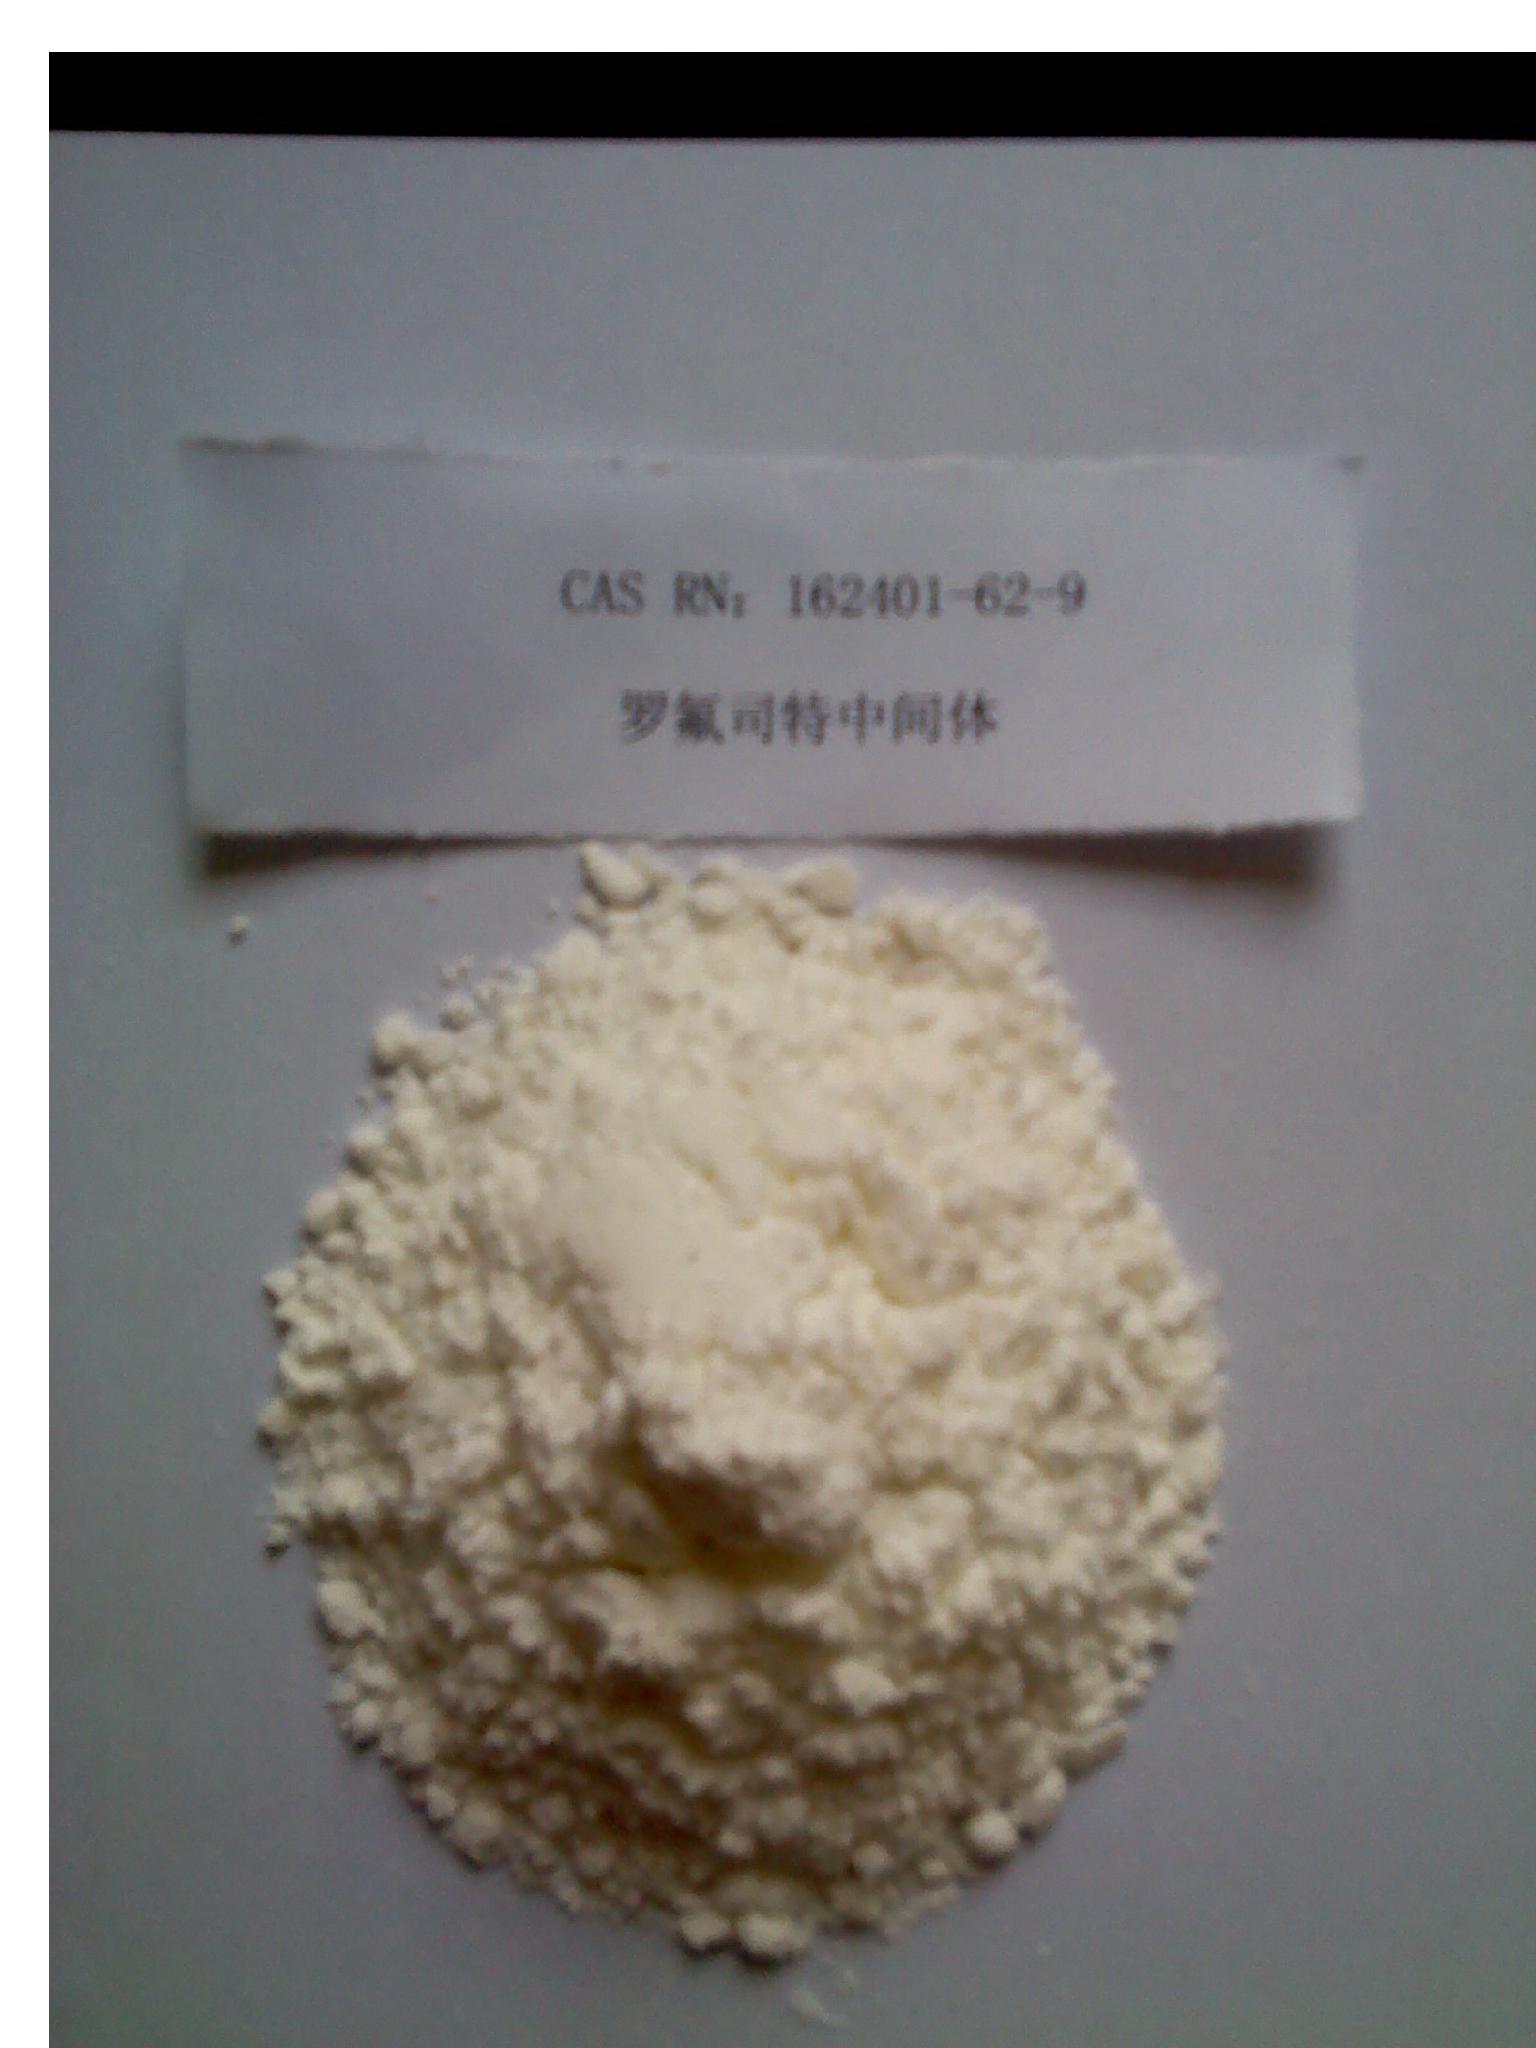 162401-62-9,3-Cyclopropylmethoxy-4-difluoromethoxybenzoic acid